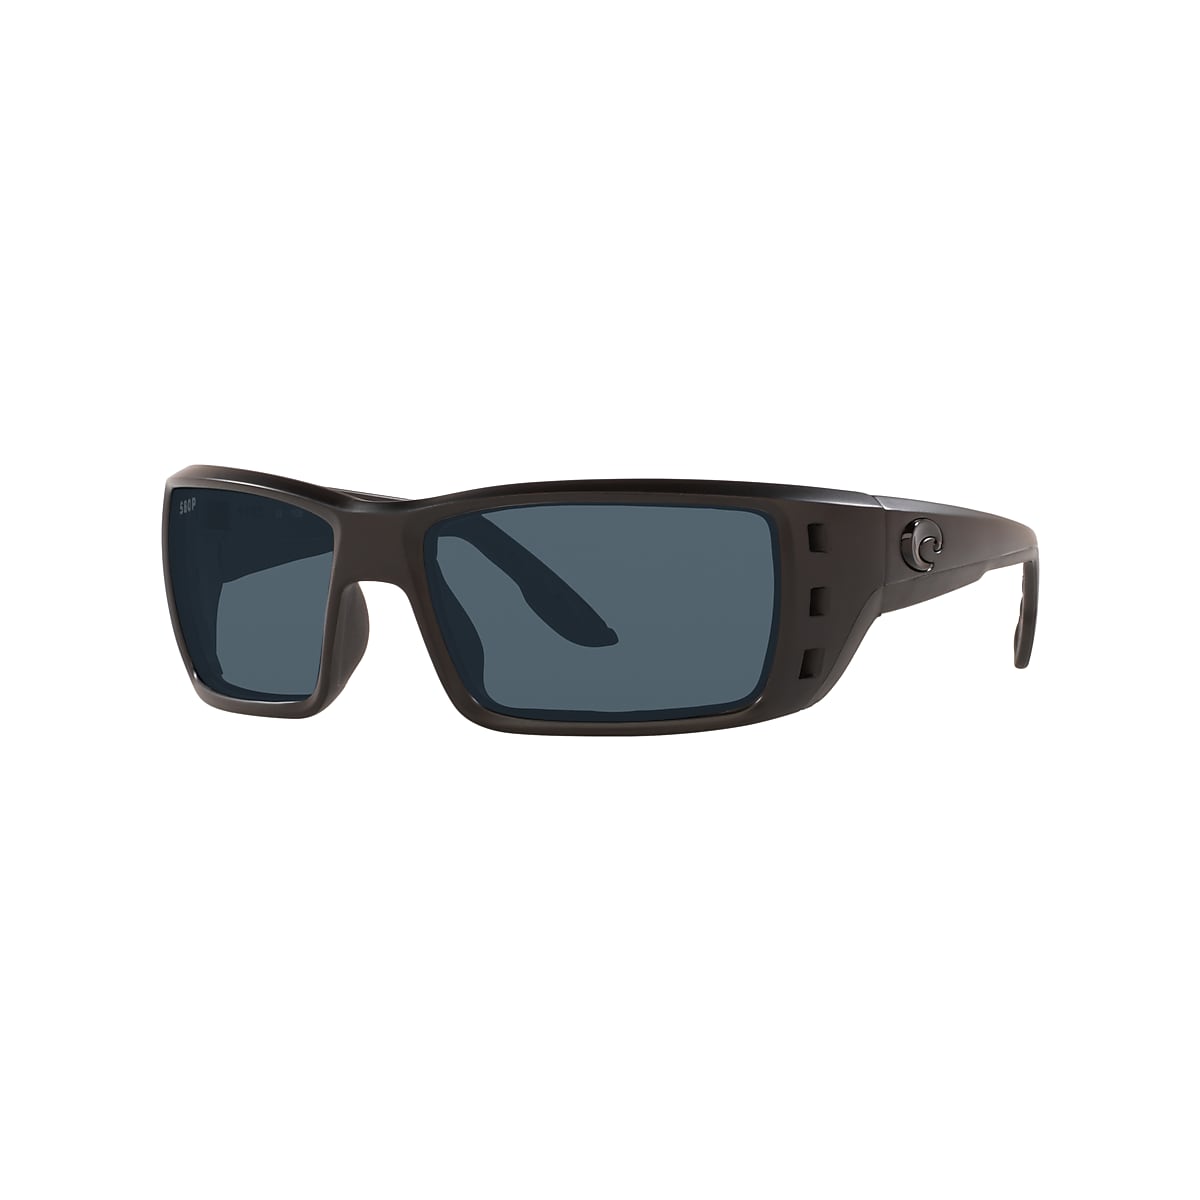 Permit Polarized Sunglasses in Gray | Costa Del Mar®